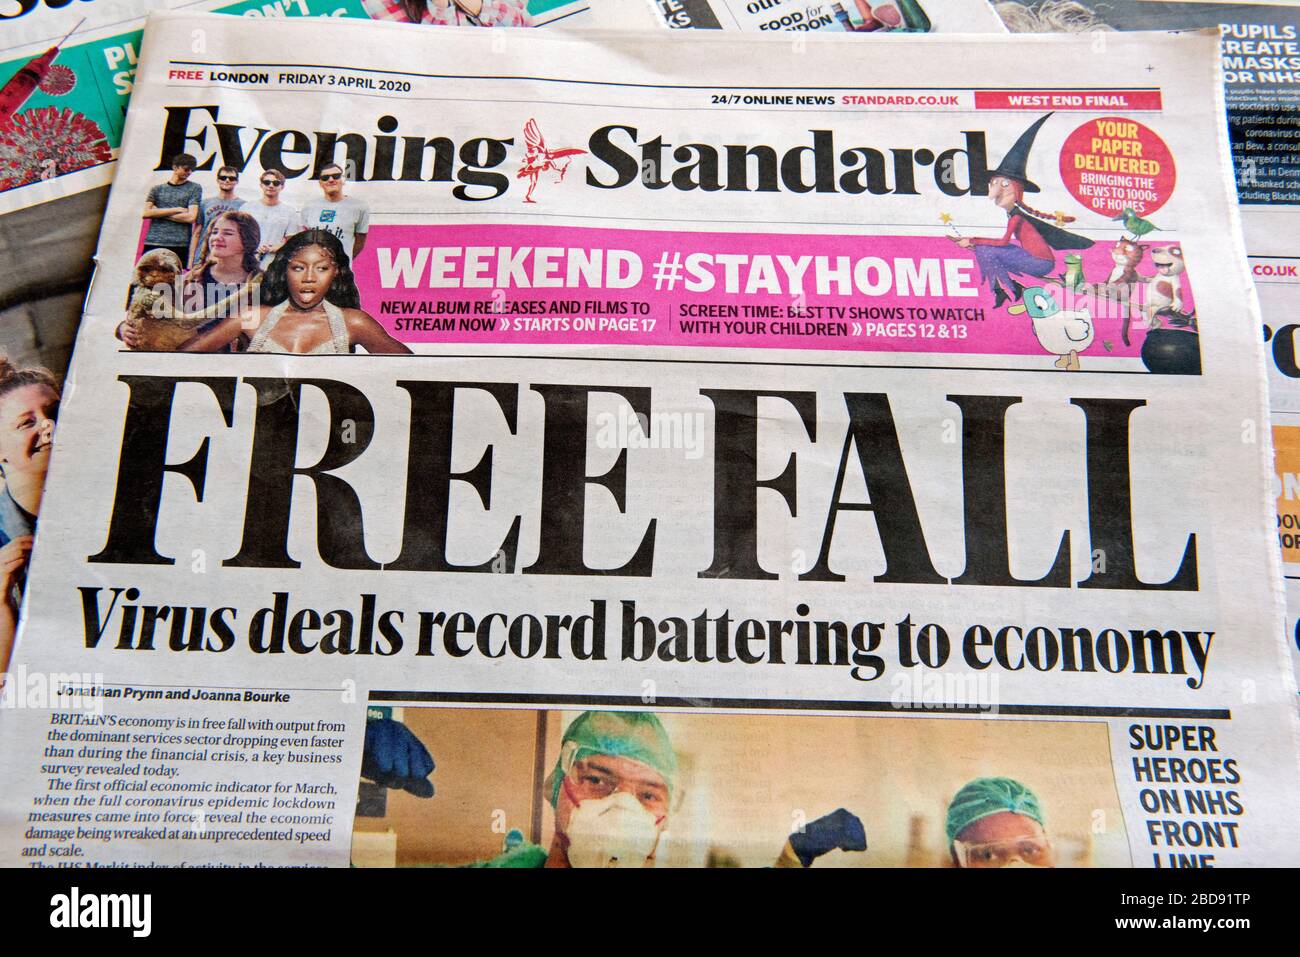 Titoli del giornale standard della sera titolo di caduta libera come gli affari del virus battering all'economia durante la crisi di Coronavirus. Londra, Inghilterra, Gran Bretagna Foto Stock